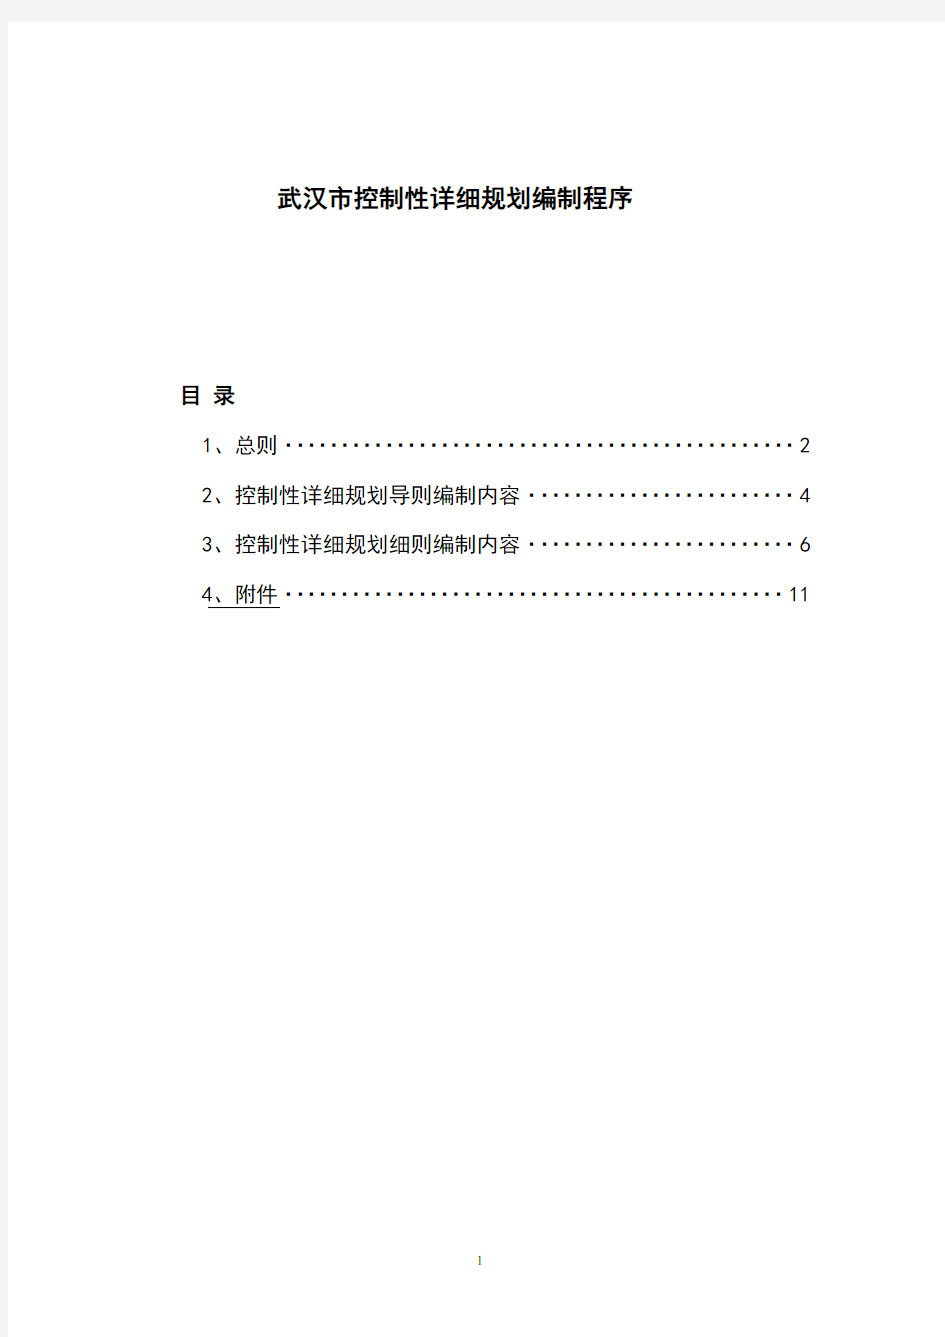 《武汉市控制性详细规划编制程序》